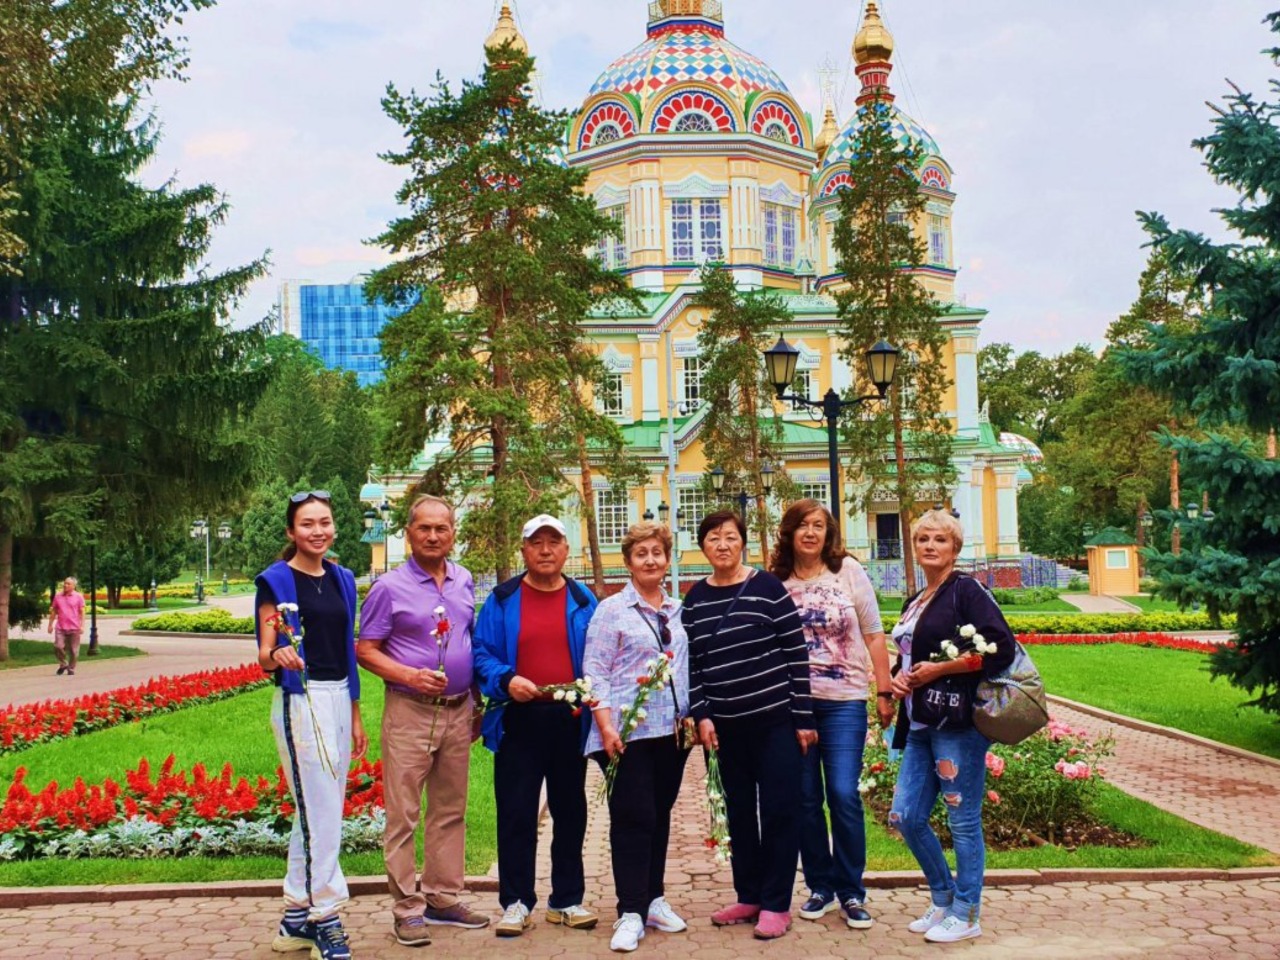 Обзорный сити-тур в Алма-Ате | Цена 17000₽, отзывы, описание экскурсии